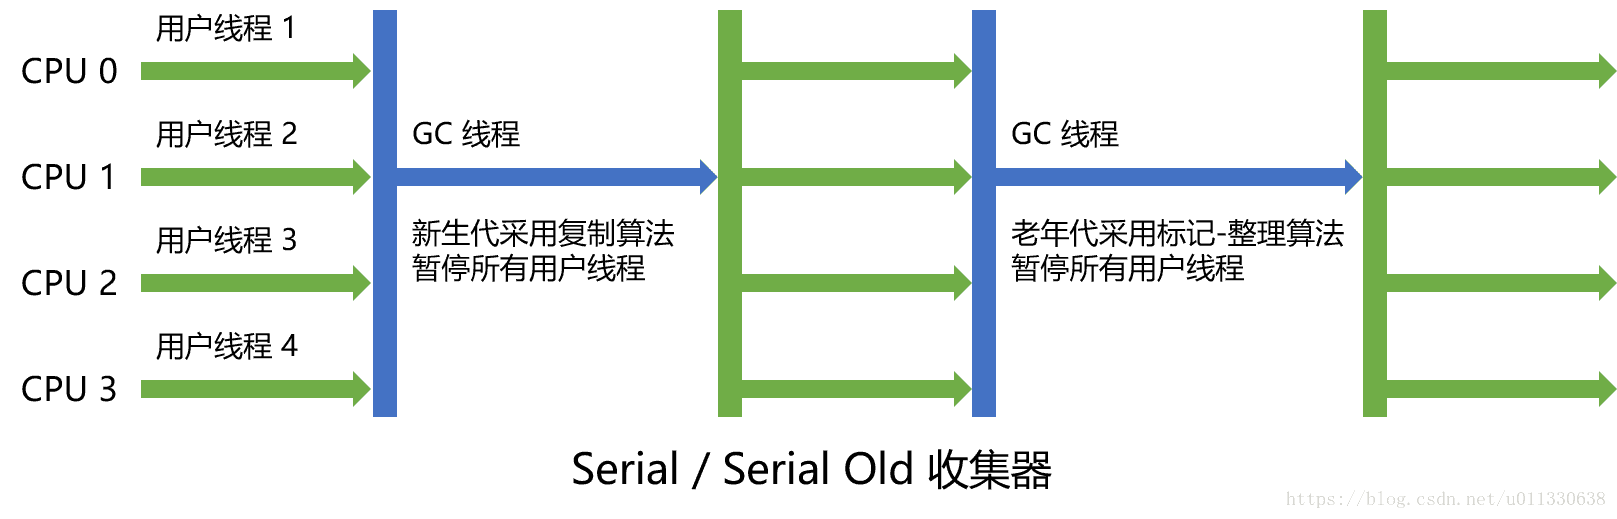 Serial - Serial Old 收集器